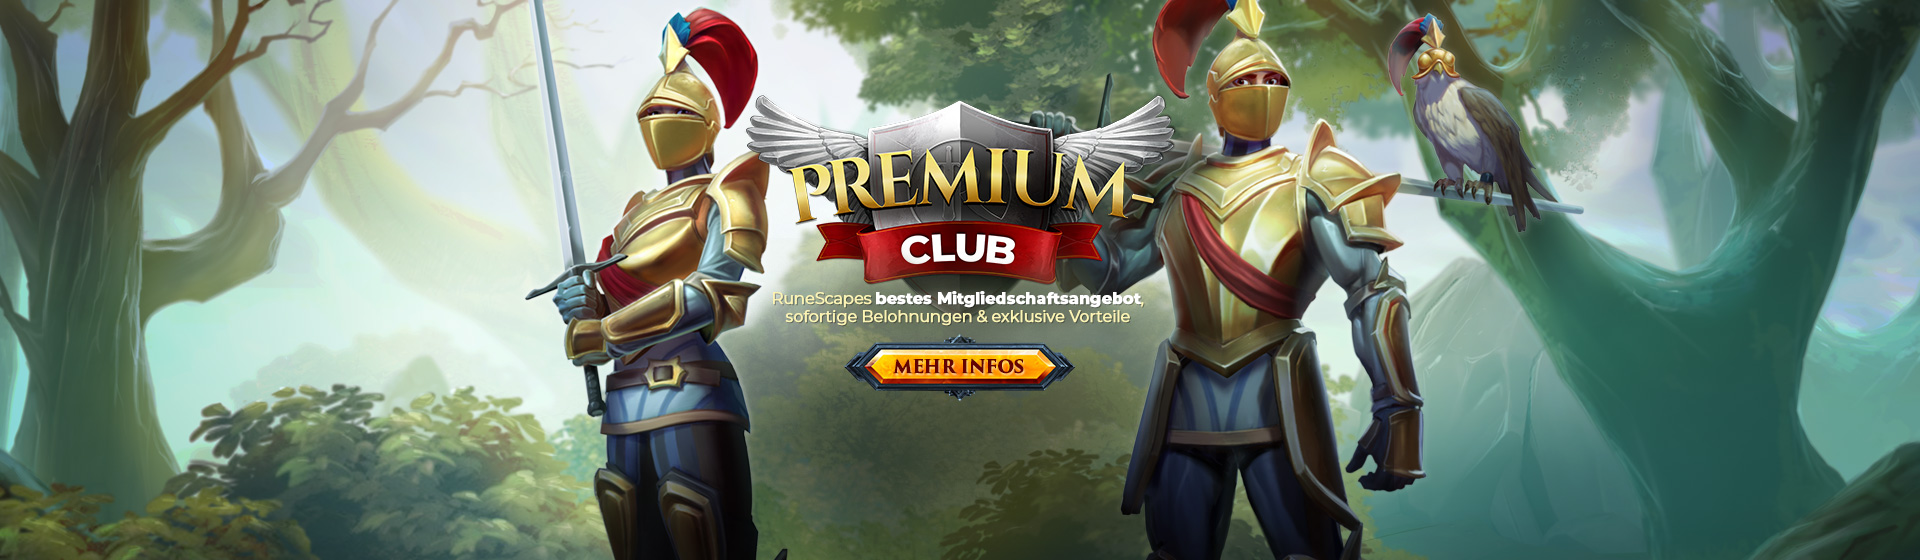 Premium-Club 2020